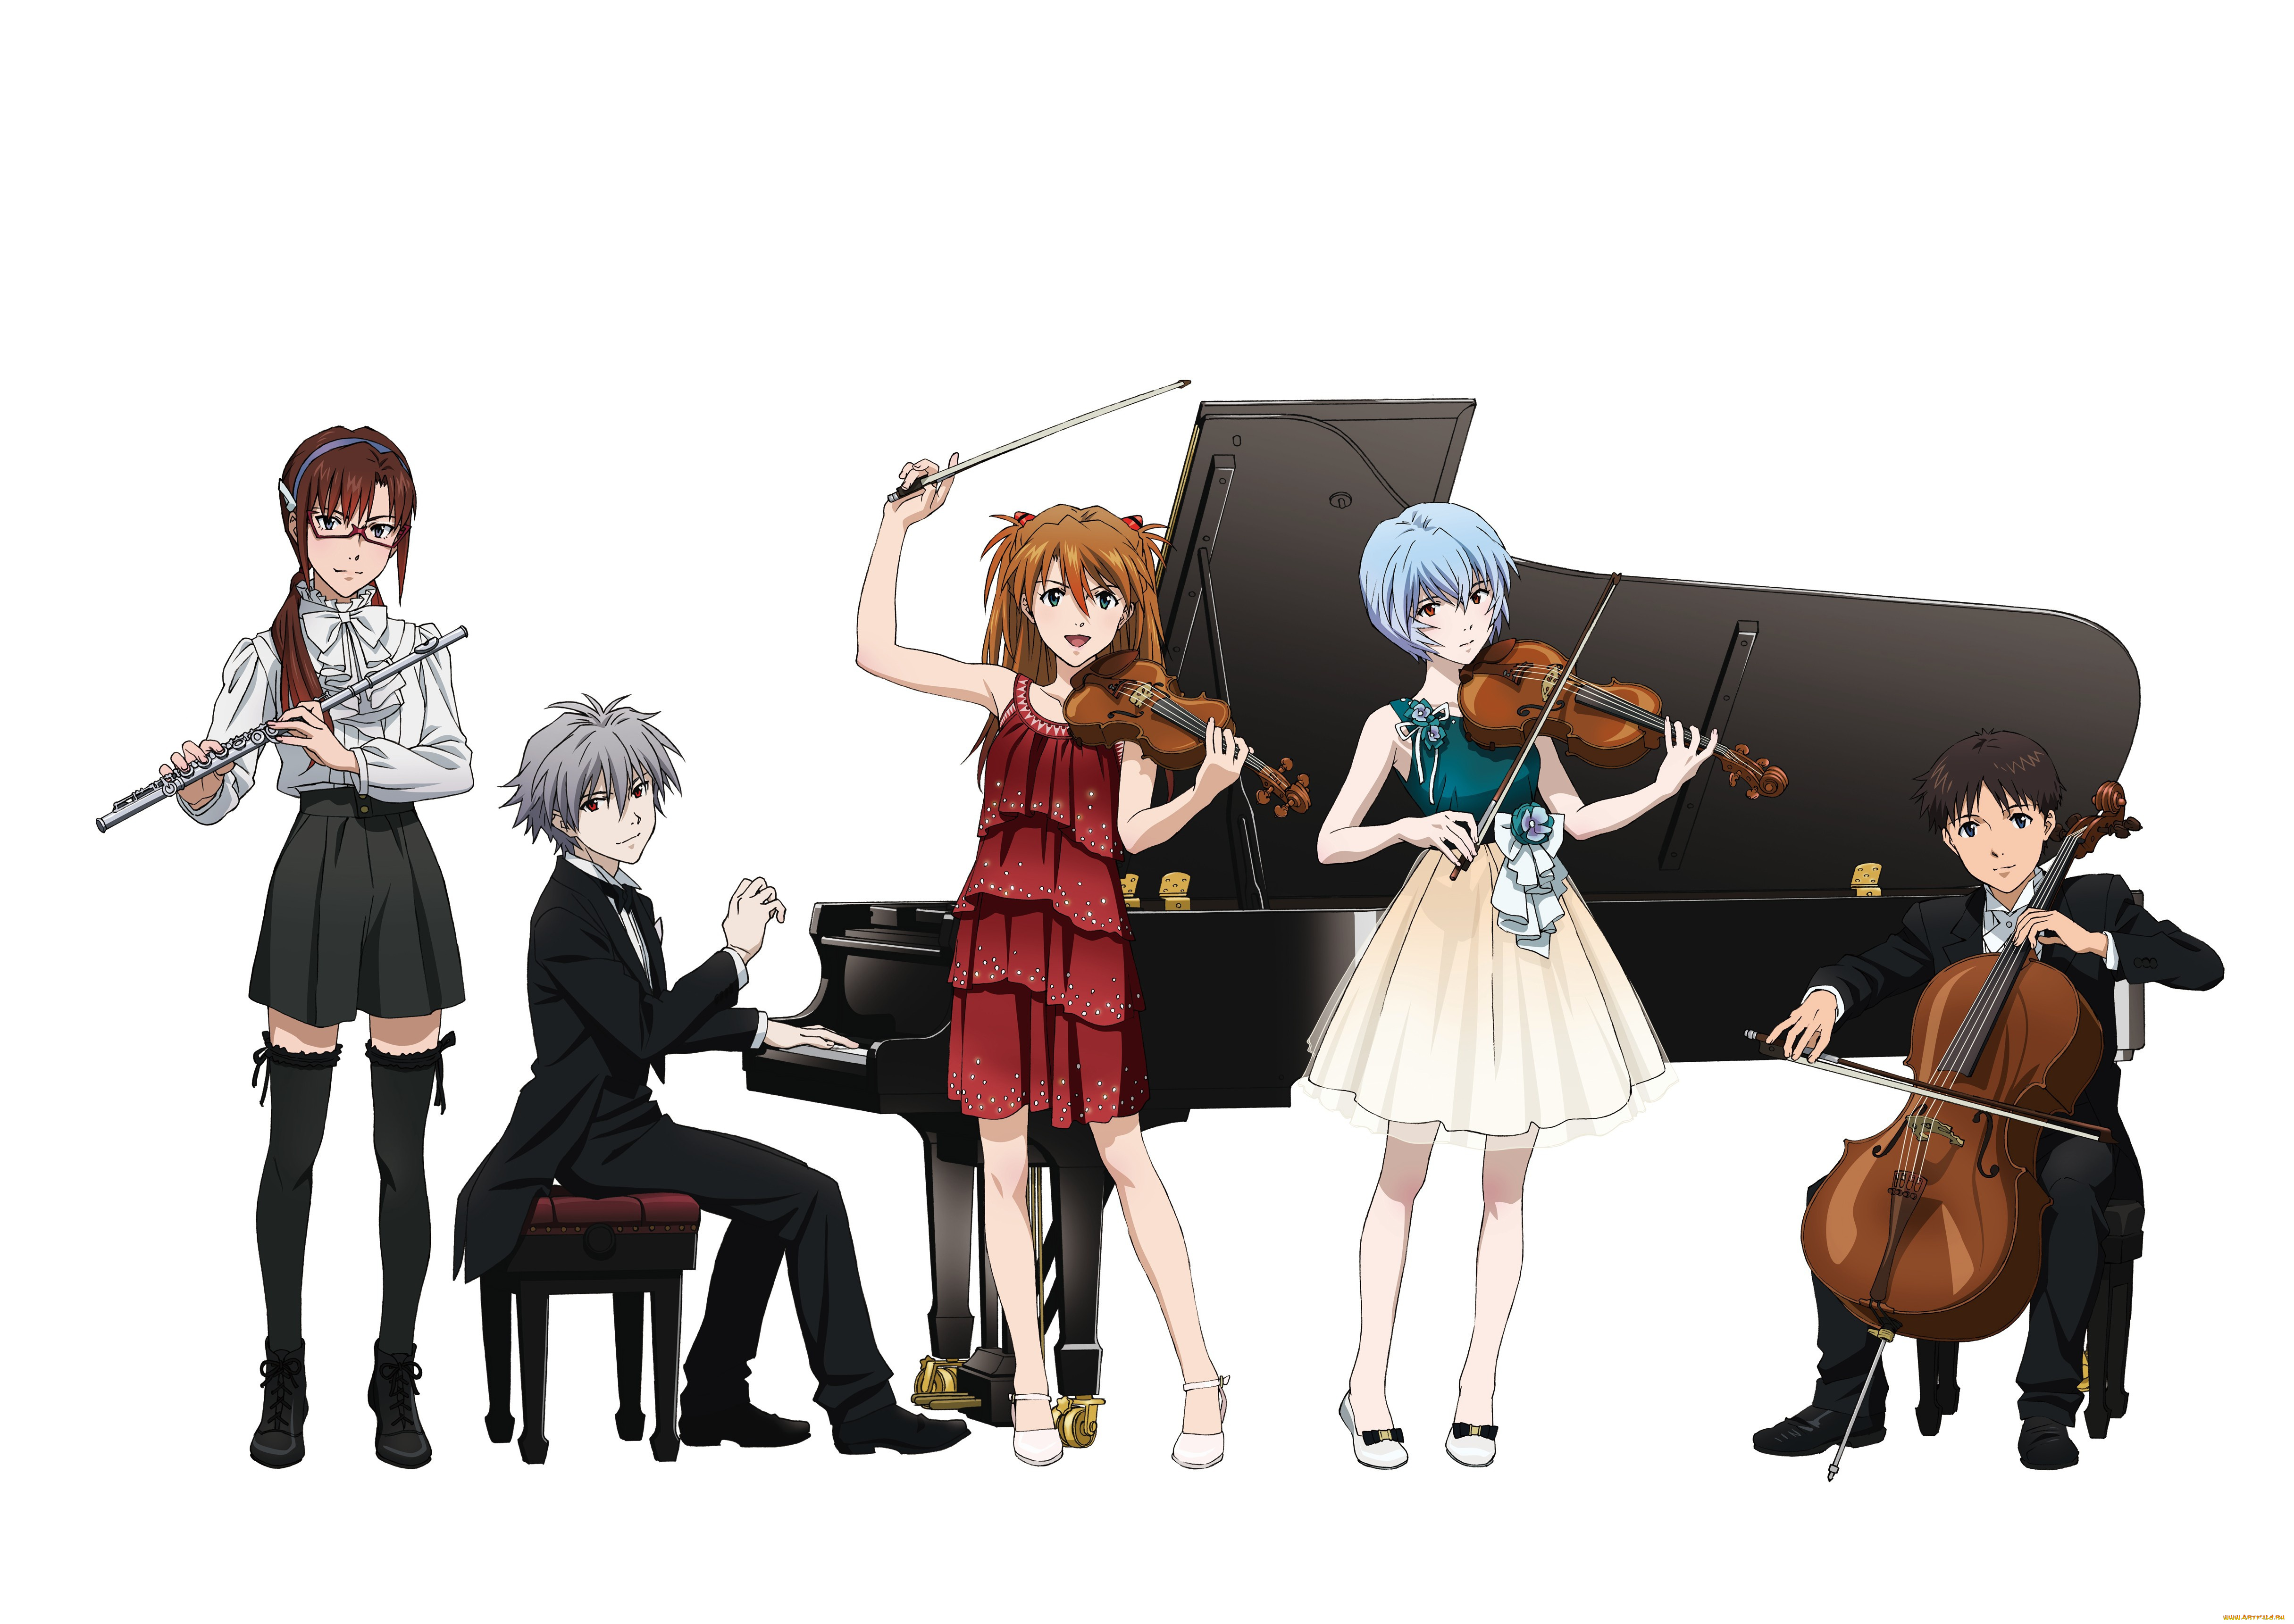 аниме, evangelion, game, neon, genesis, anime, piano, violin, cello, japanese, flute